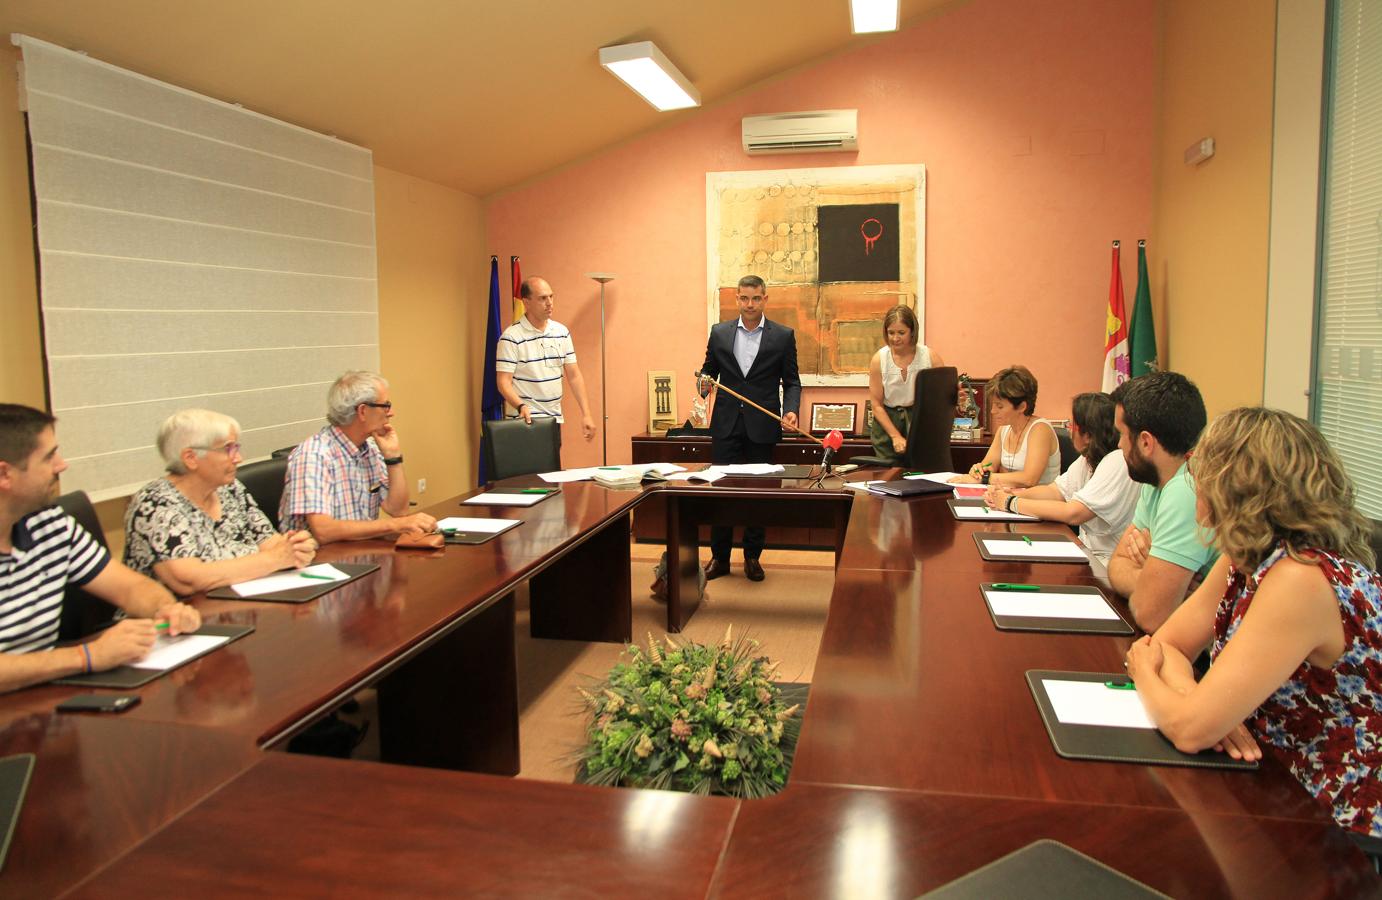 Fotos: Nuevo alcalde en Valverde del Majano